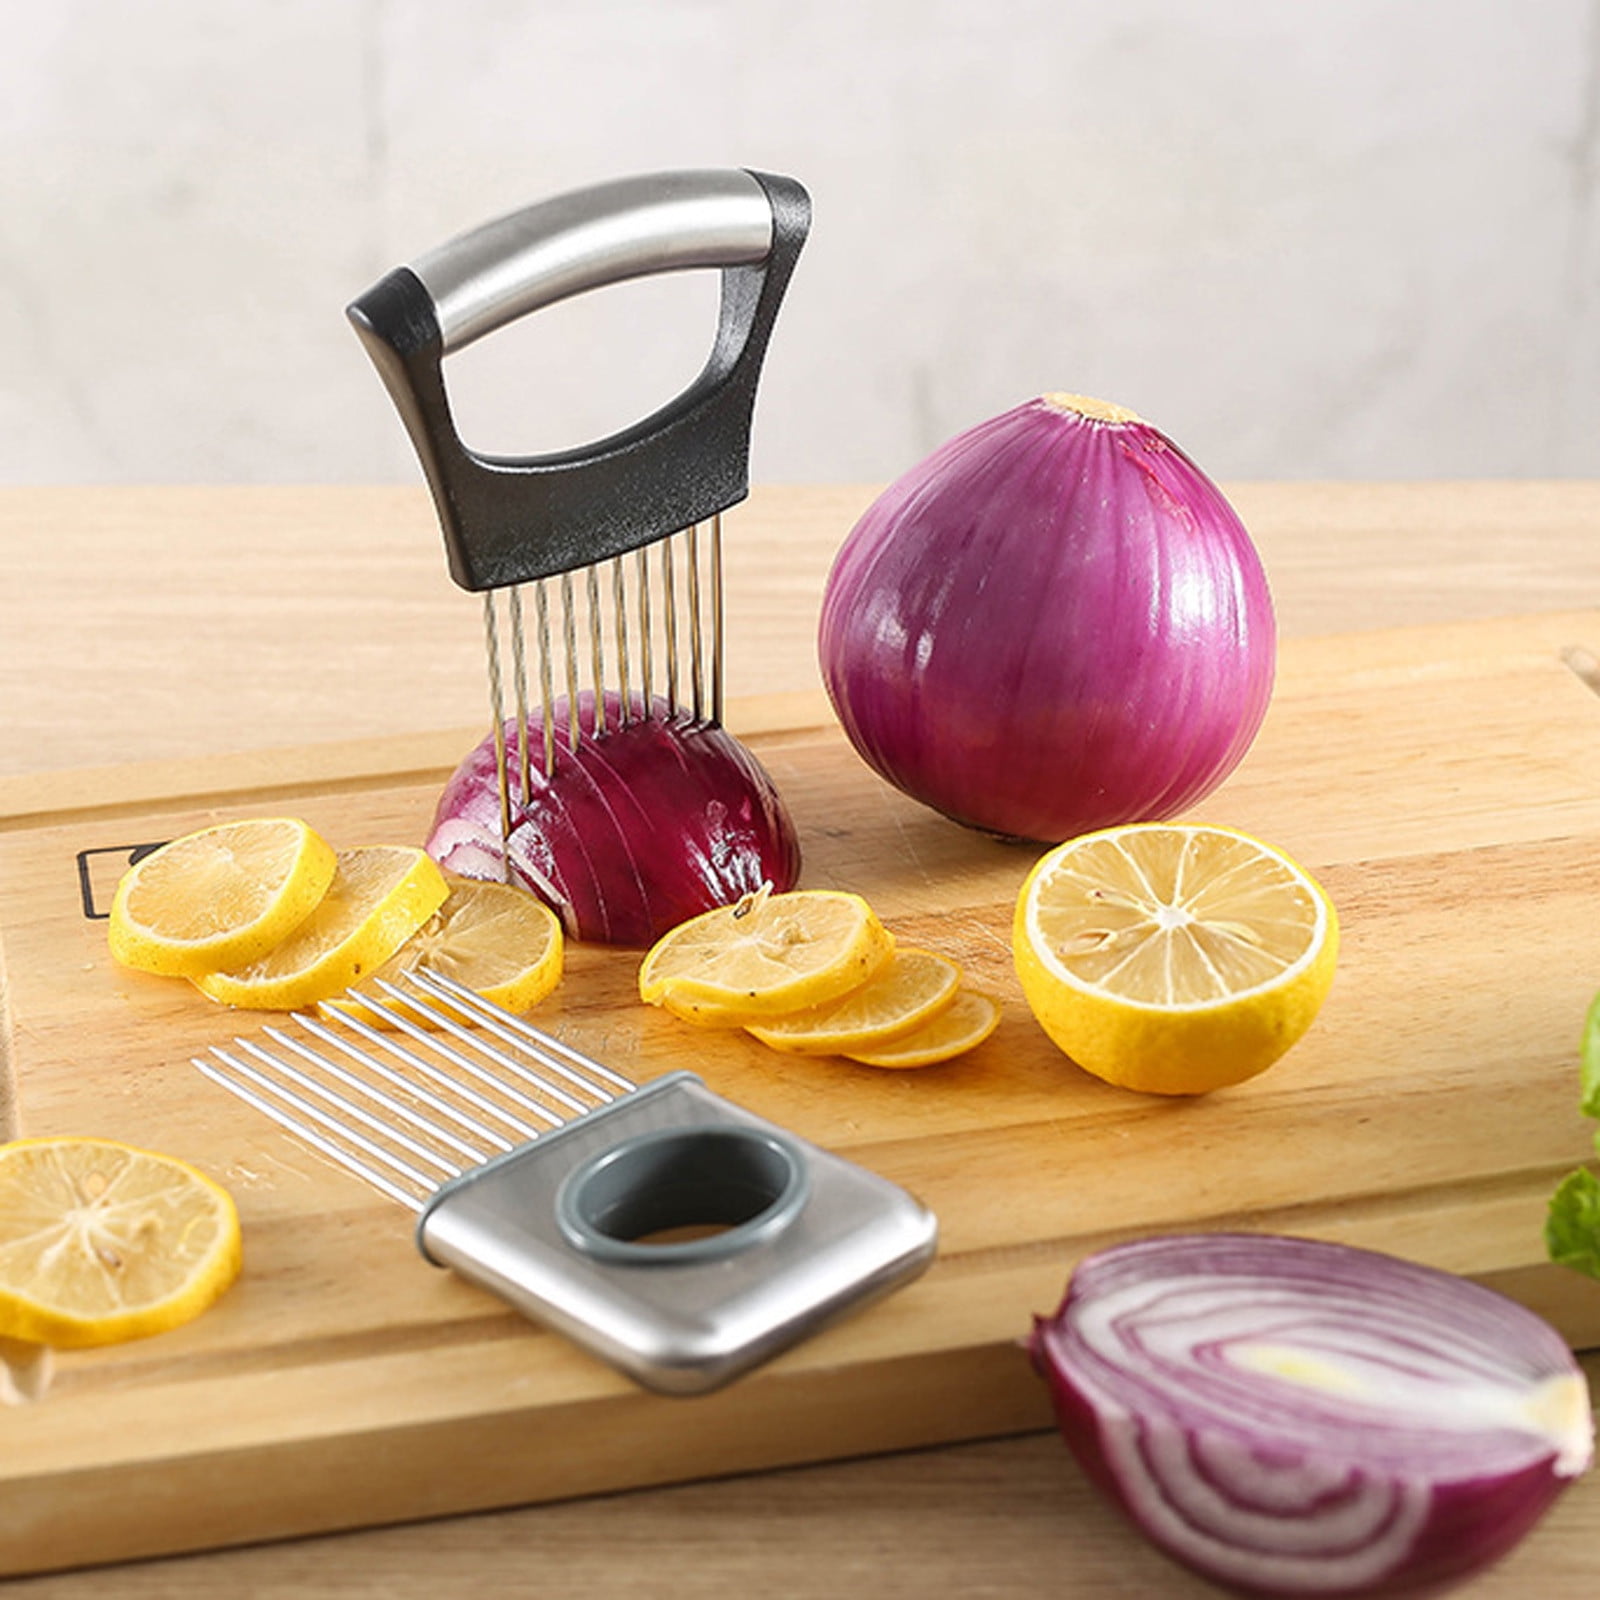 2Pcs Onion Holder Slicer, Stainless Steel Tomato Lemon Potato Vegetable  Holder Slicer Cutter Tool for Kitchen Worker Slicing